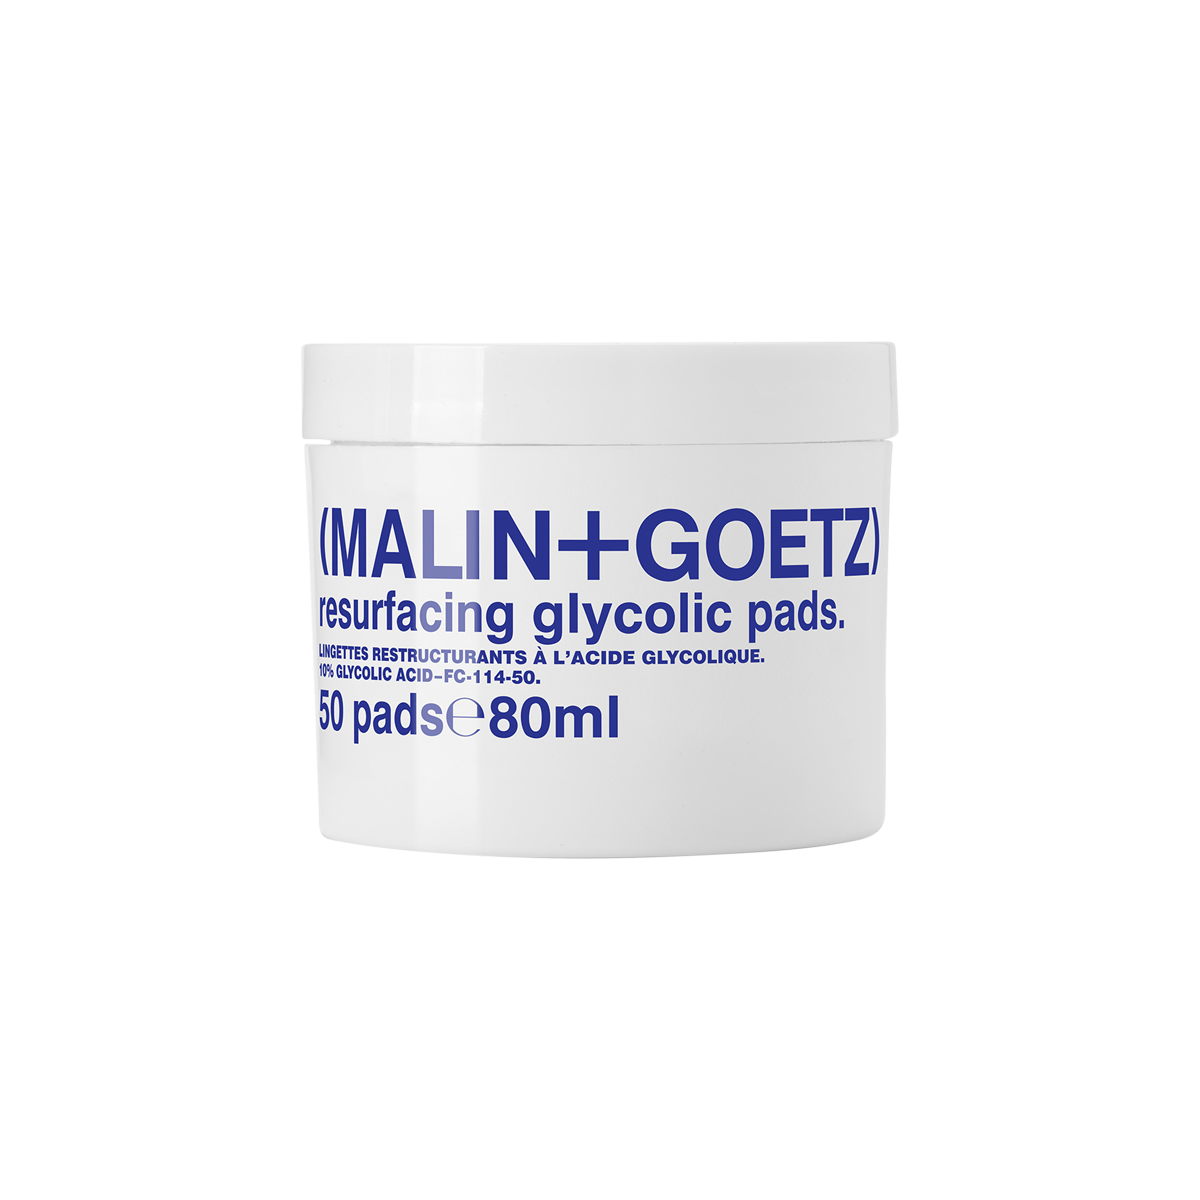 MALIN+GOETZ - Resurfacing Glycolic Pads 50pads